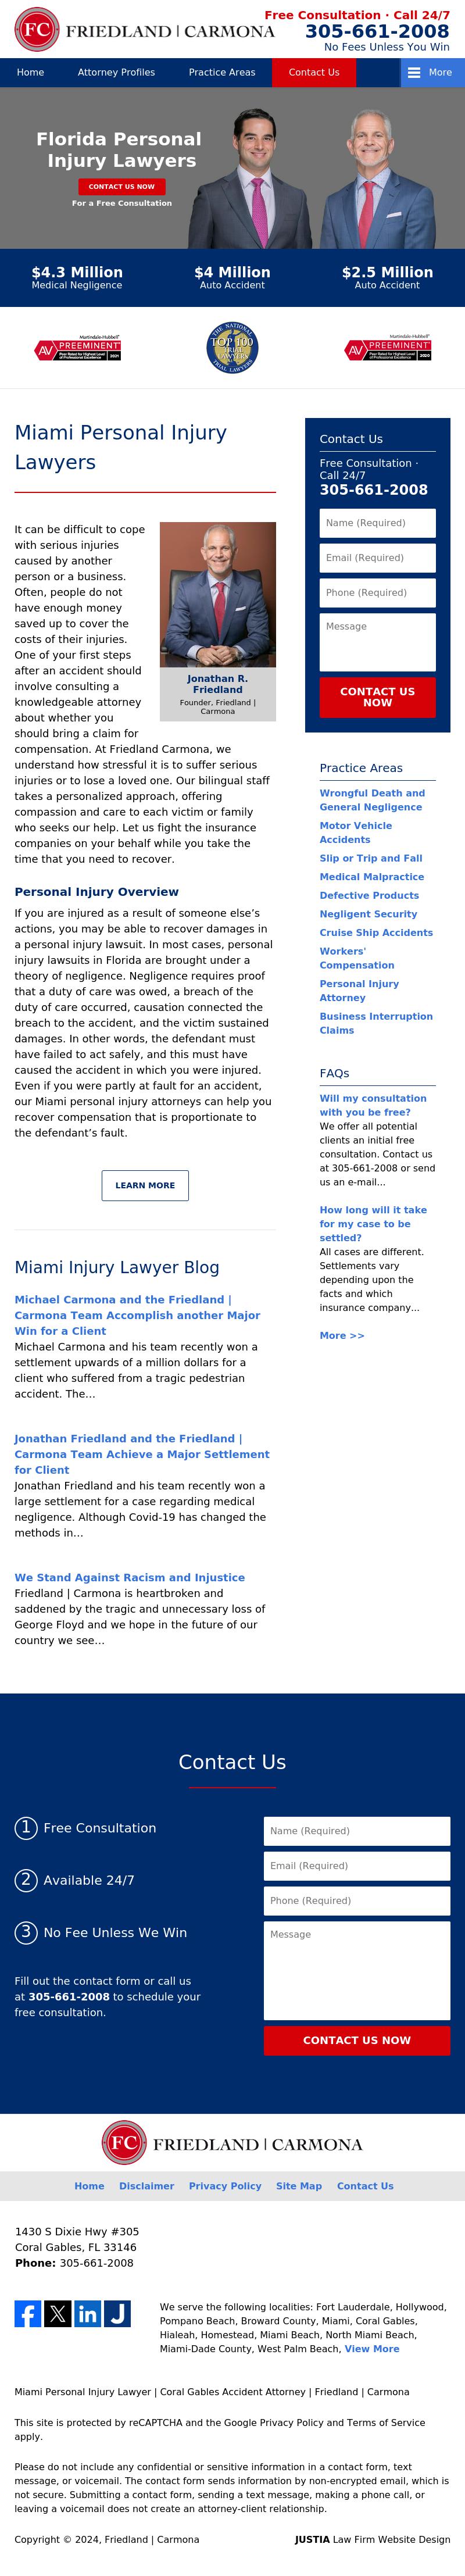 Friedland Law Group - Miami FL Lawyers